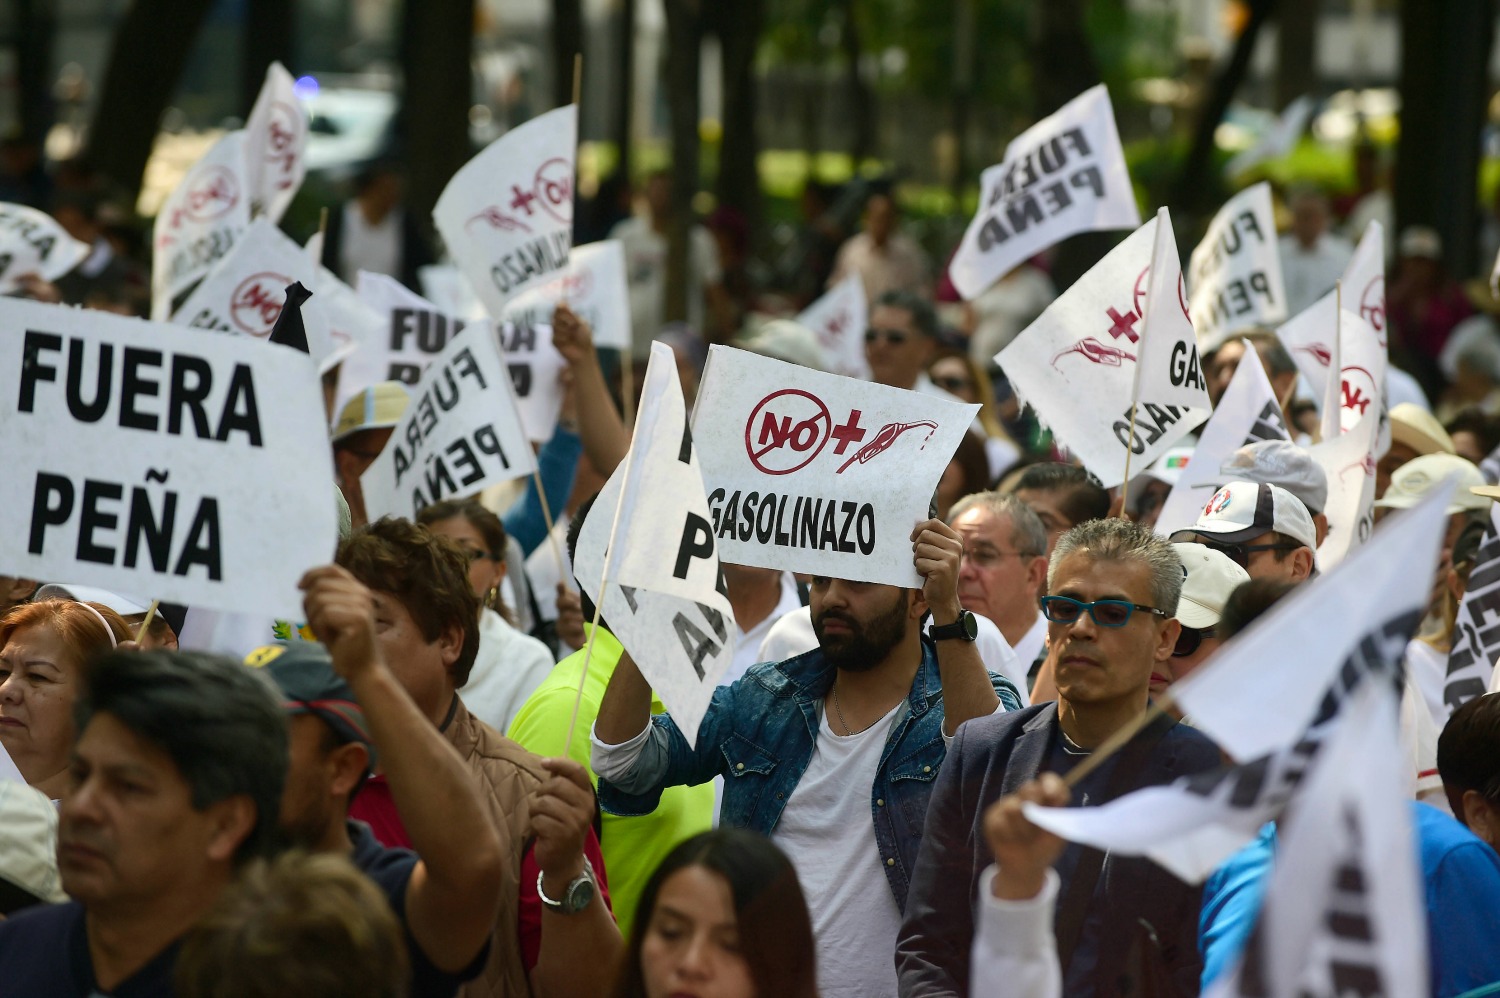 Los mexicanos protestan por la "desproporcionada" subida del precio de los carburantes